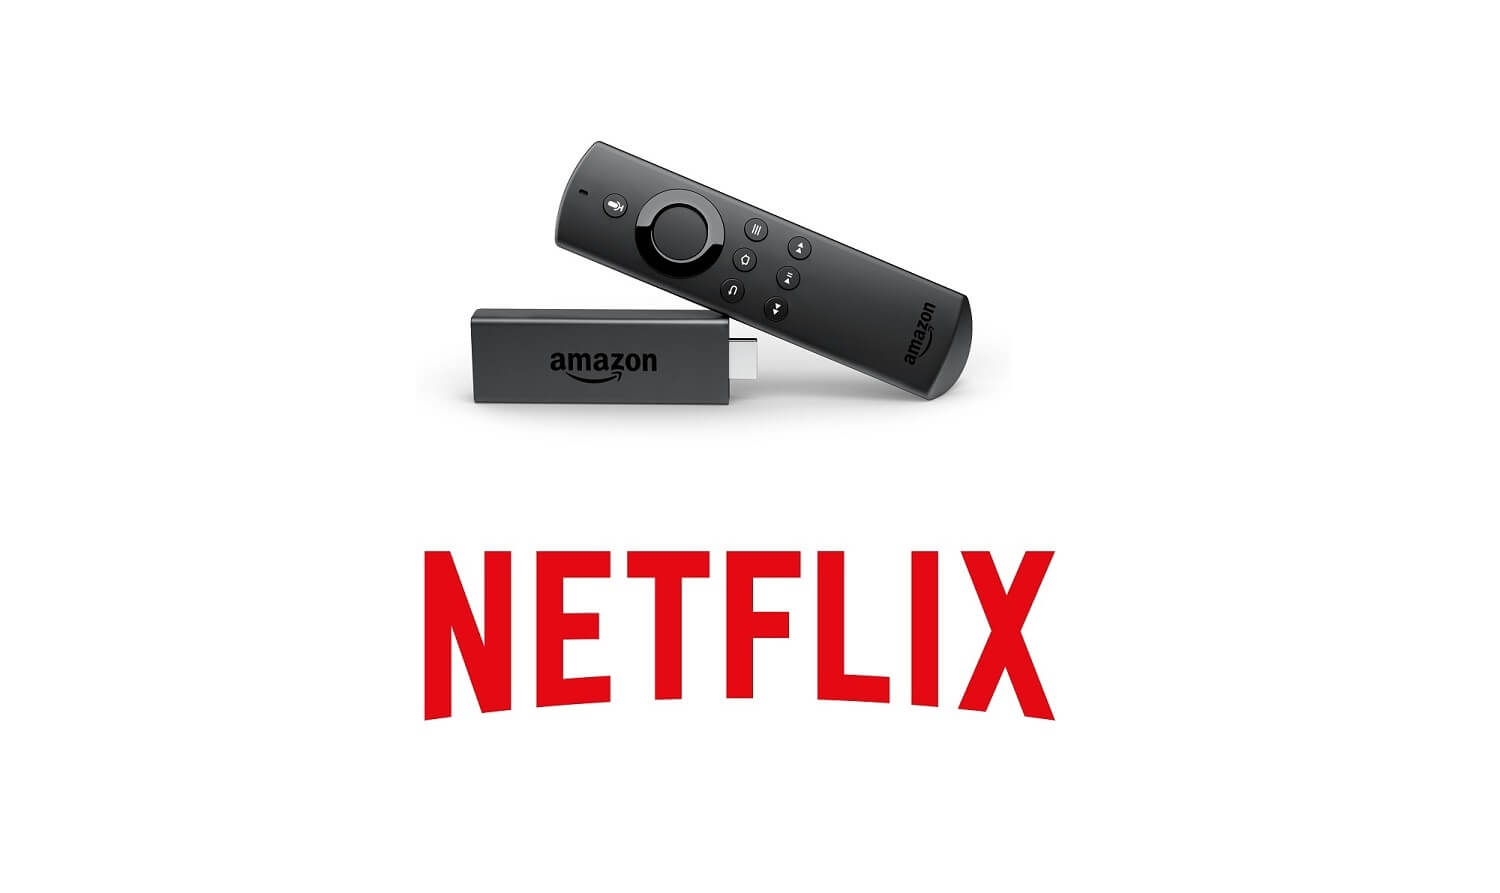 Launch & Watch Netflix on Firestick / Fire TV Within a Minute